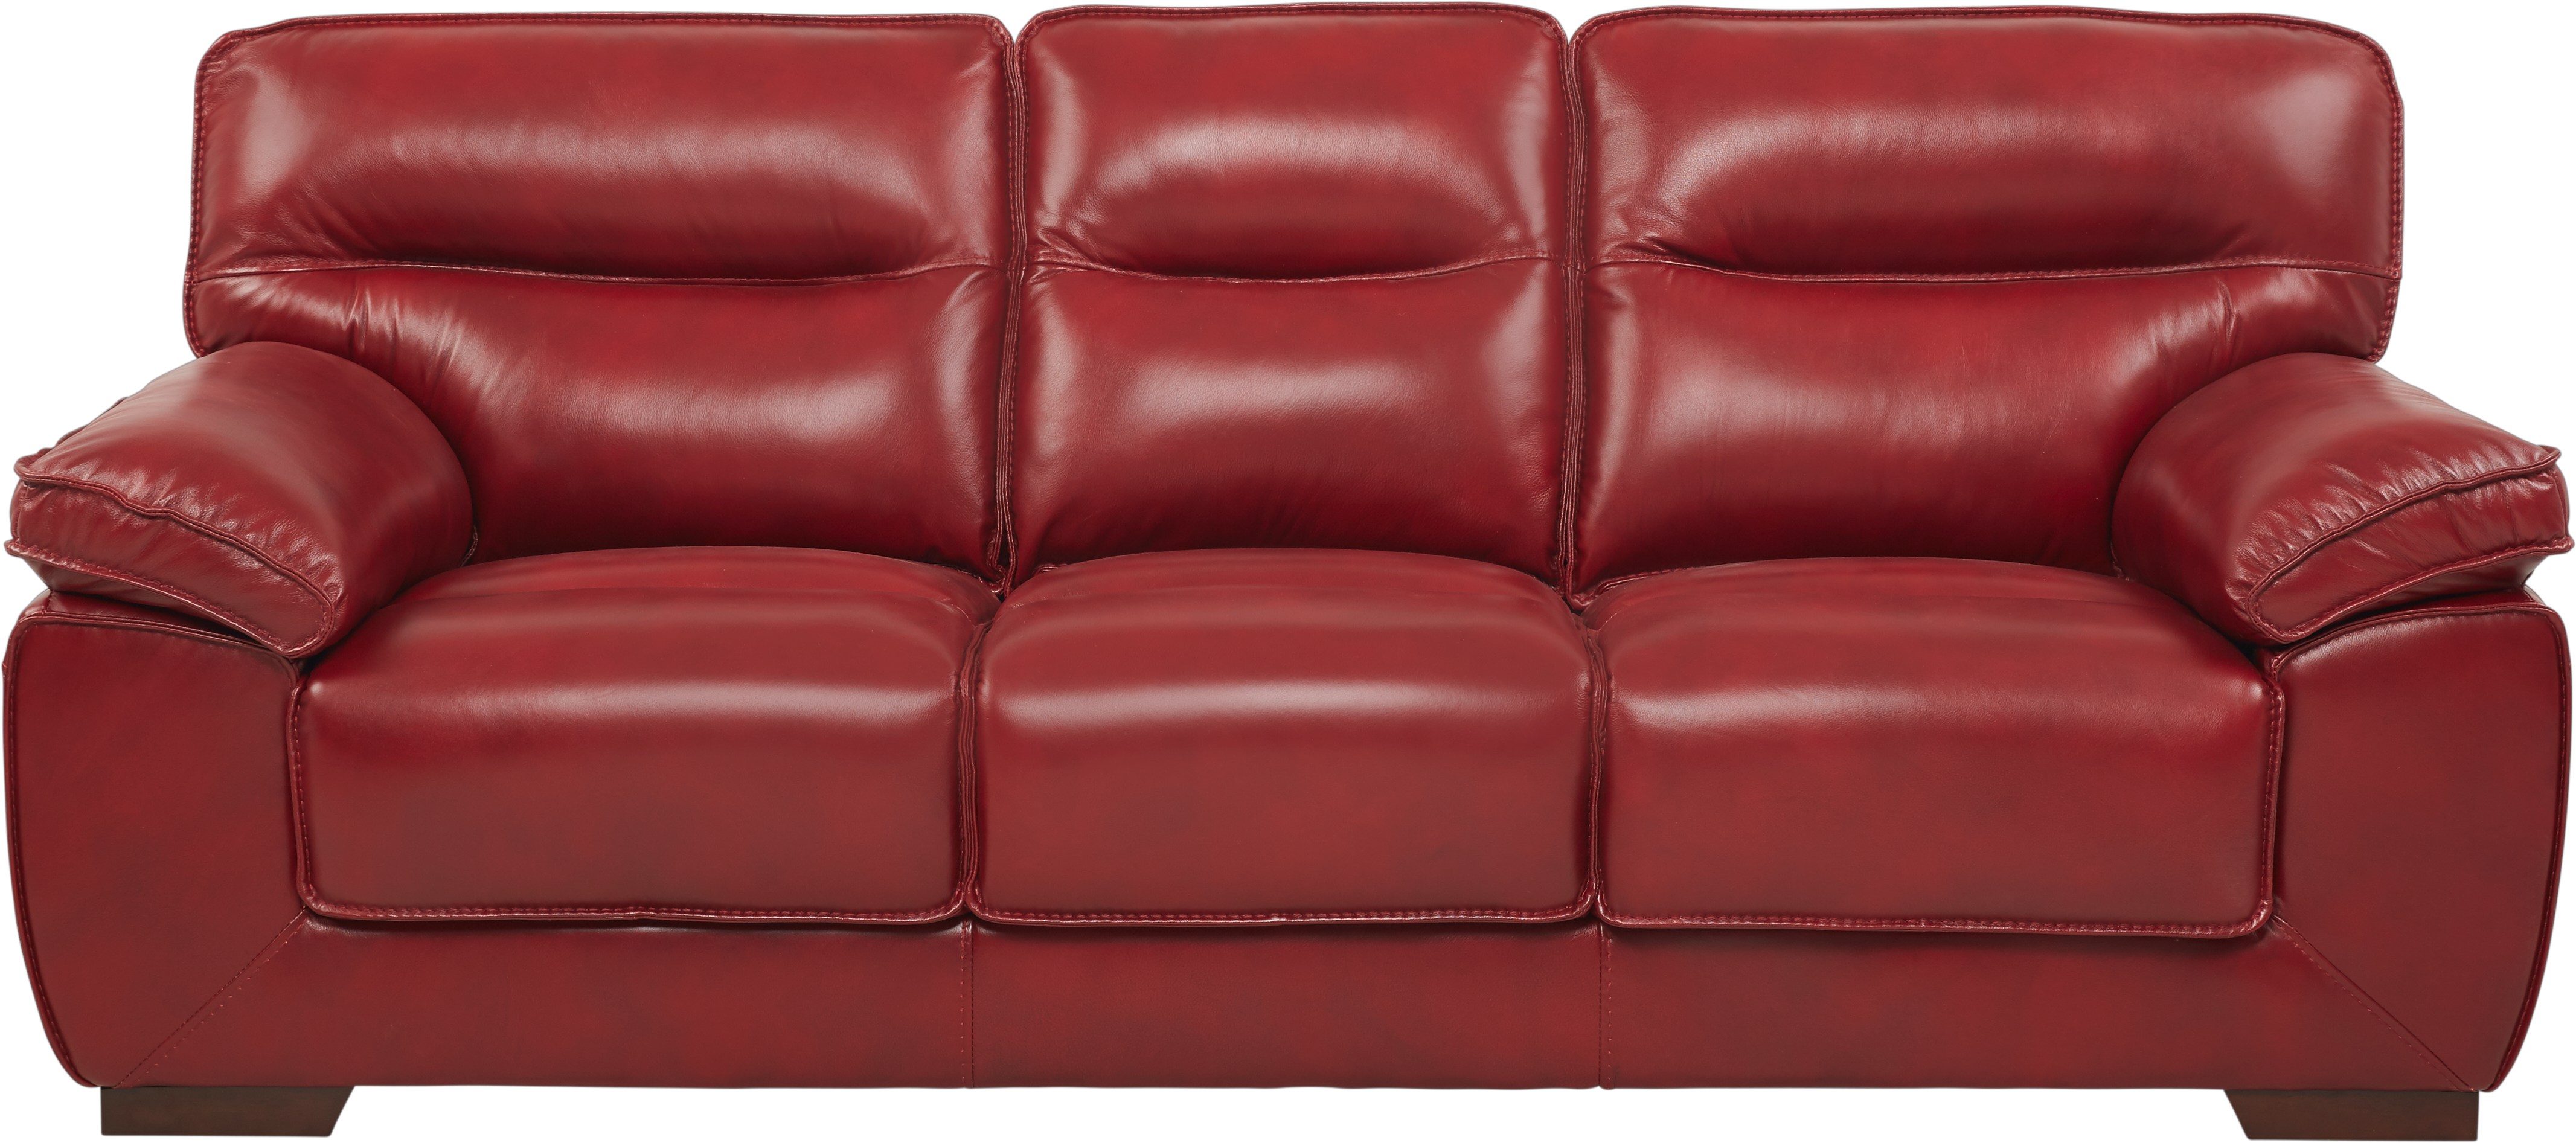 red leather sofa repair kit